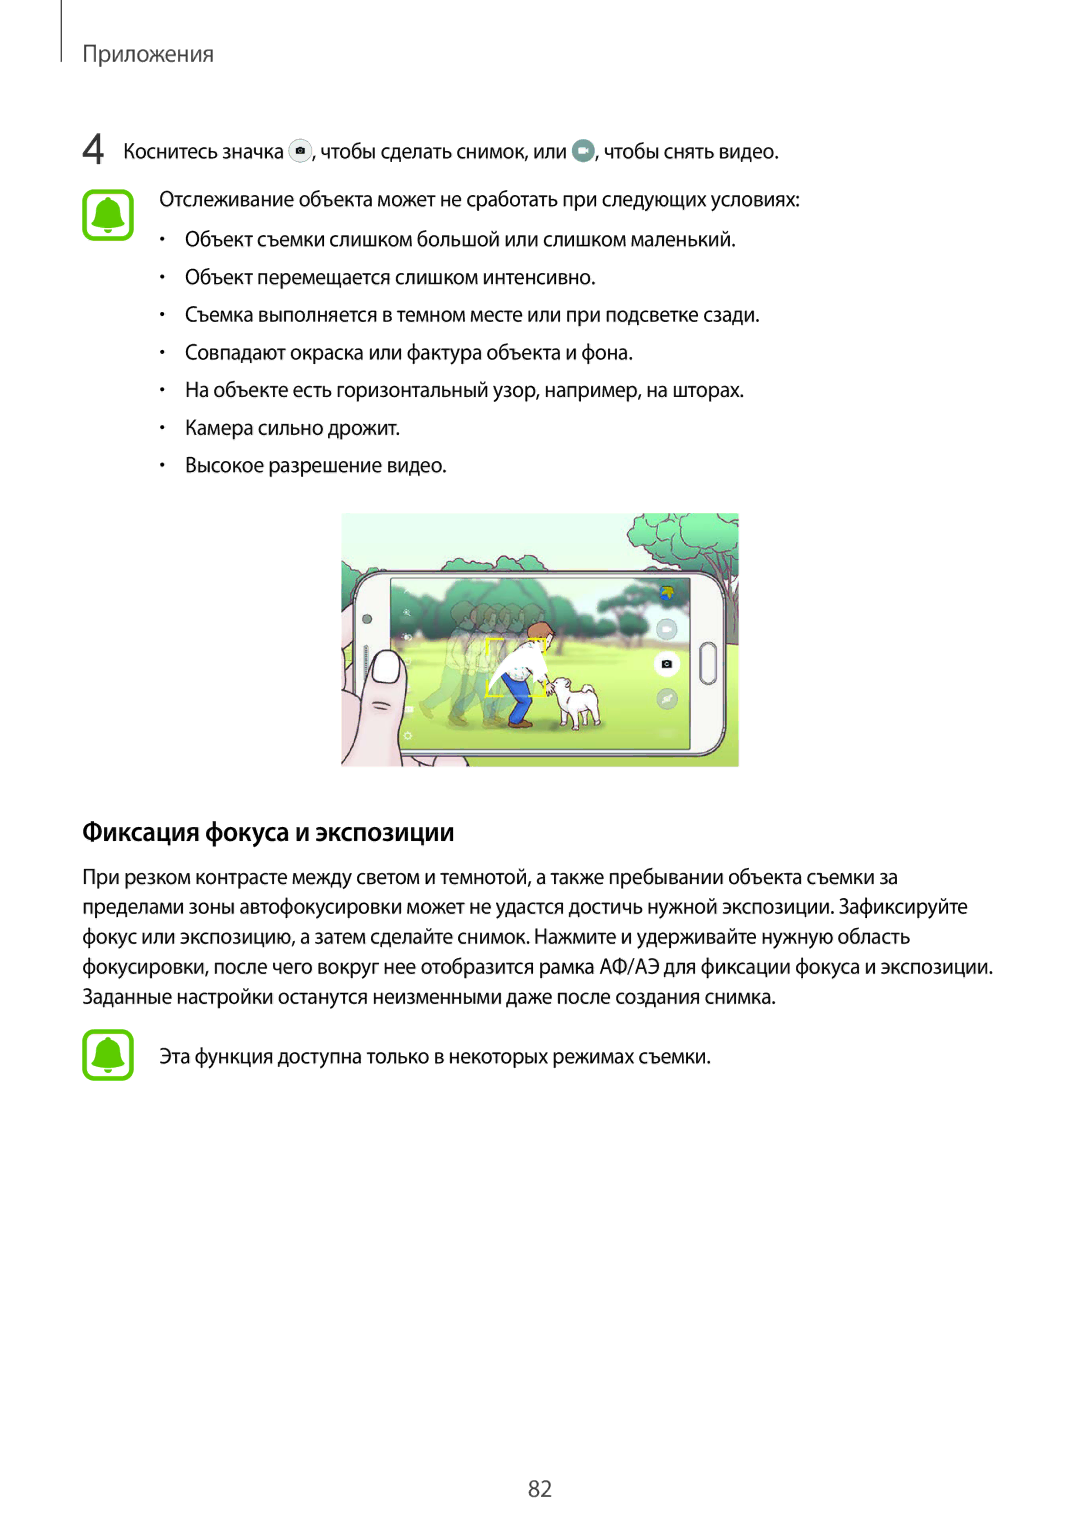 Samsung SM-N920CZDESER manual Фиксация фокуса и экспозиции, Эта функция доступна только в некоторых режимах съемки 